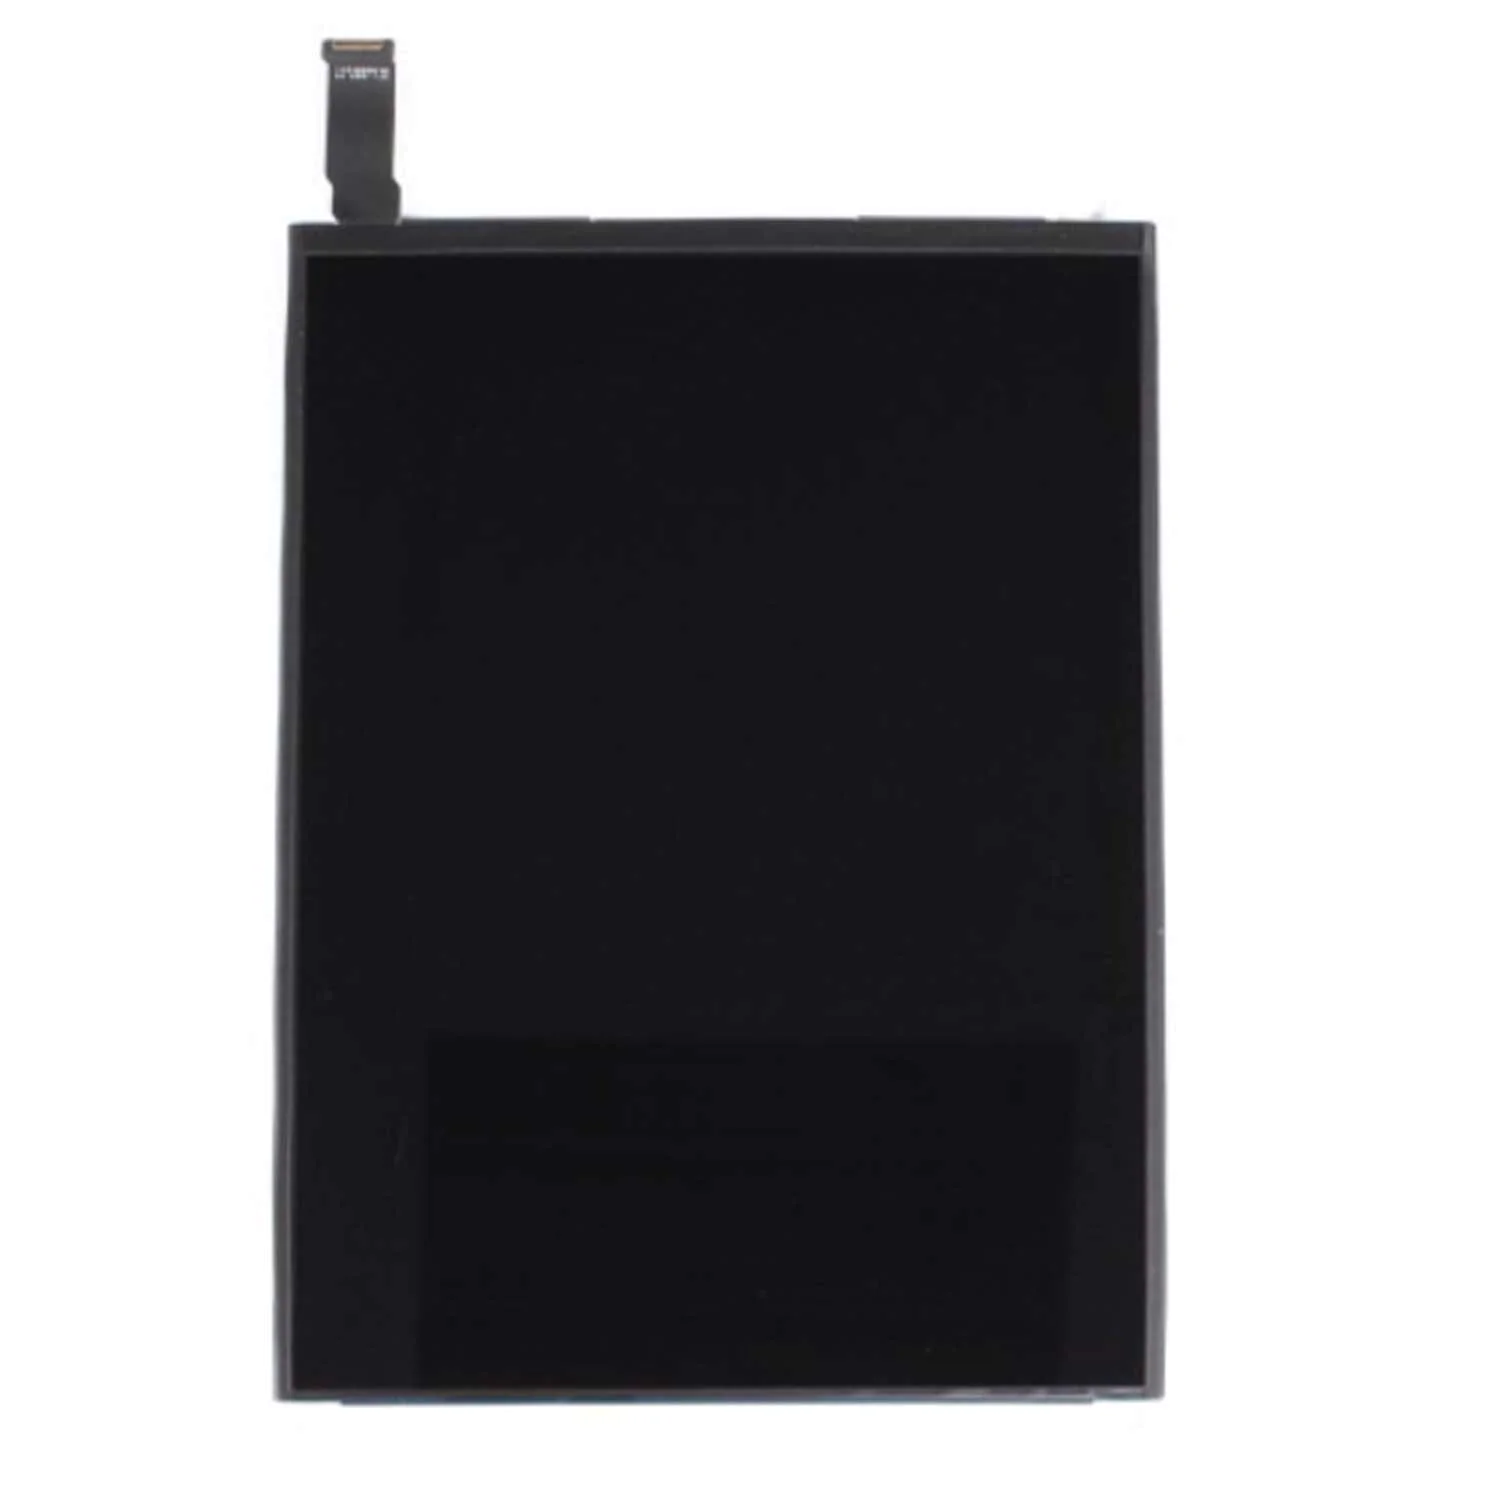 LCD Apple iPad Mini 2 A1489 / A1490